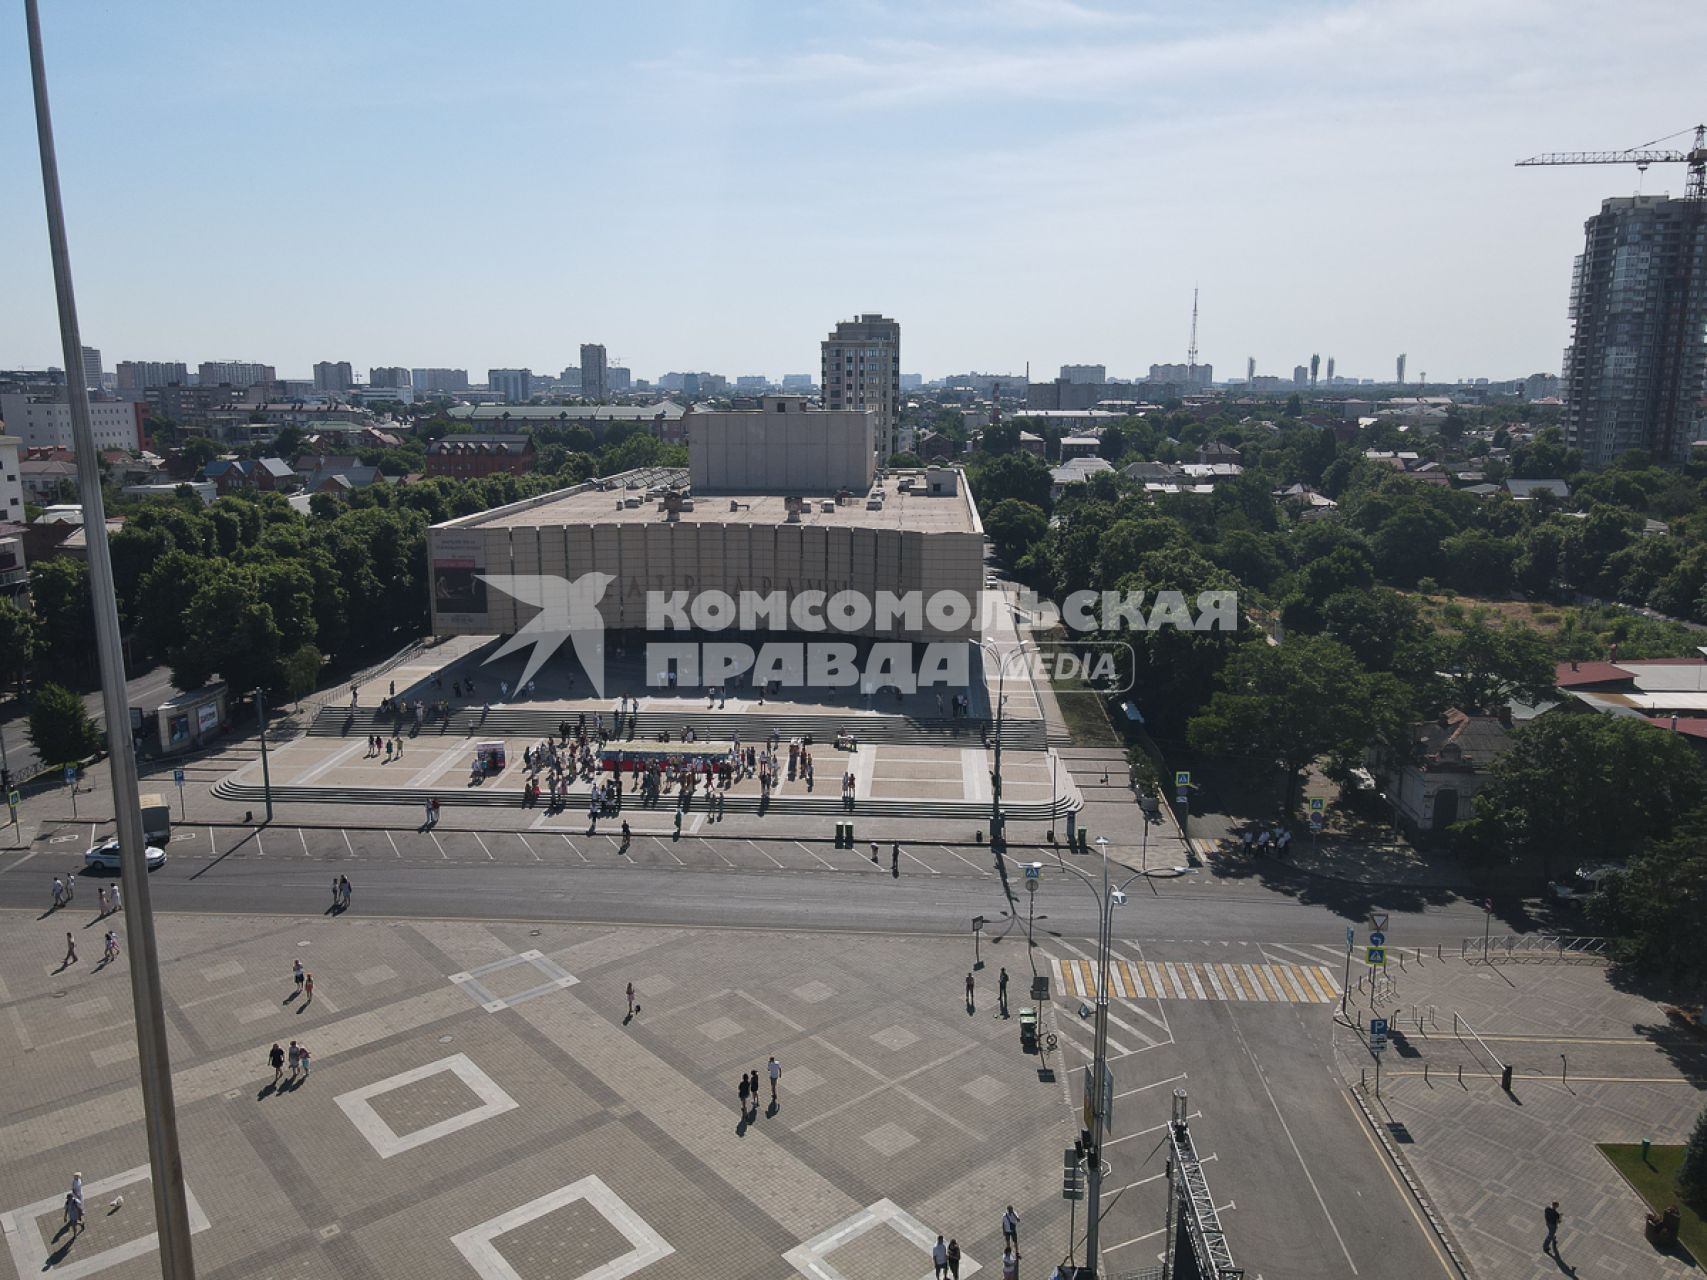 Краснодар. Самый большой  флаг России из роз собрали на главной площади города  к празднику День России.